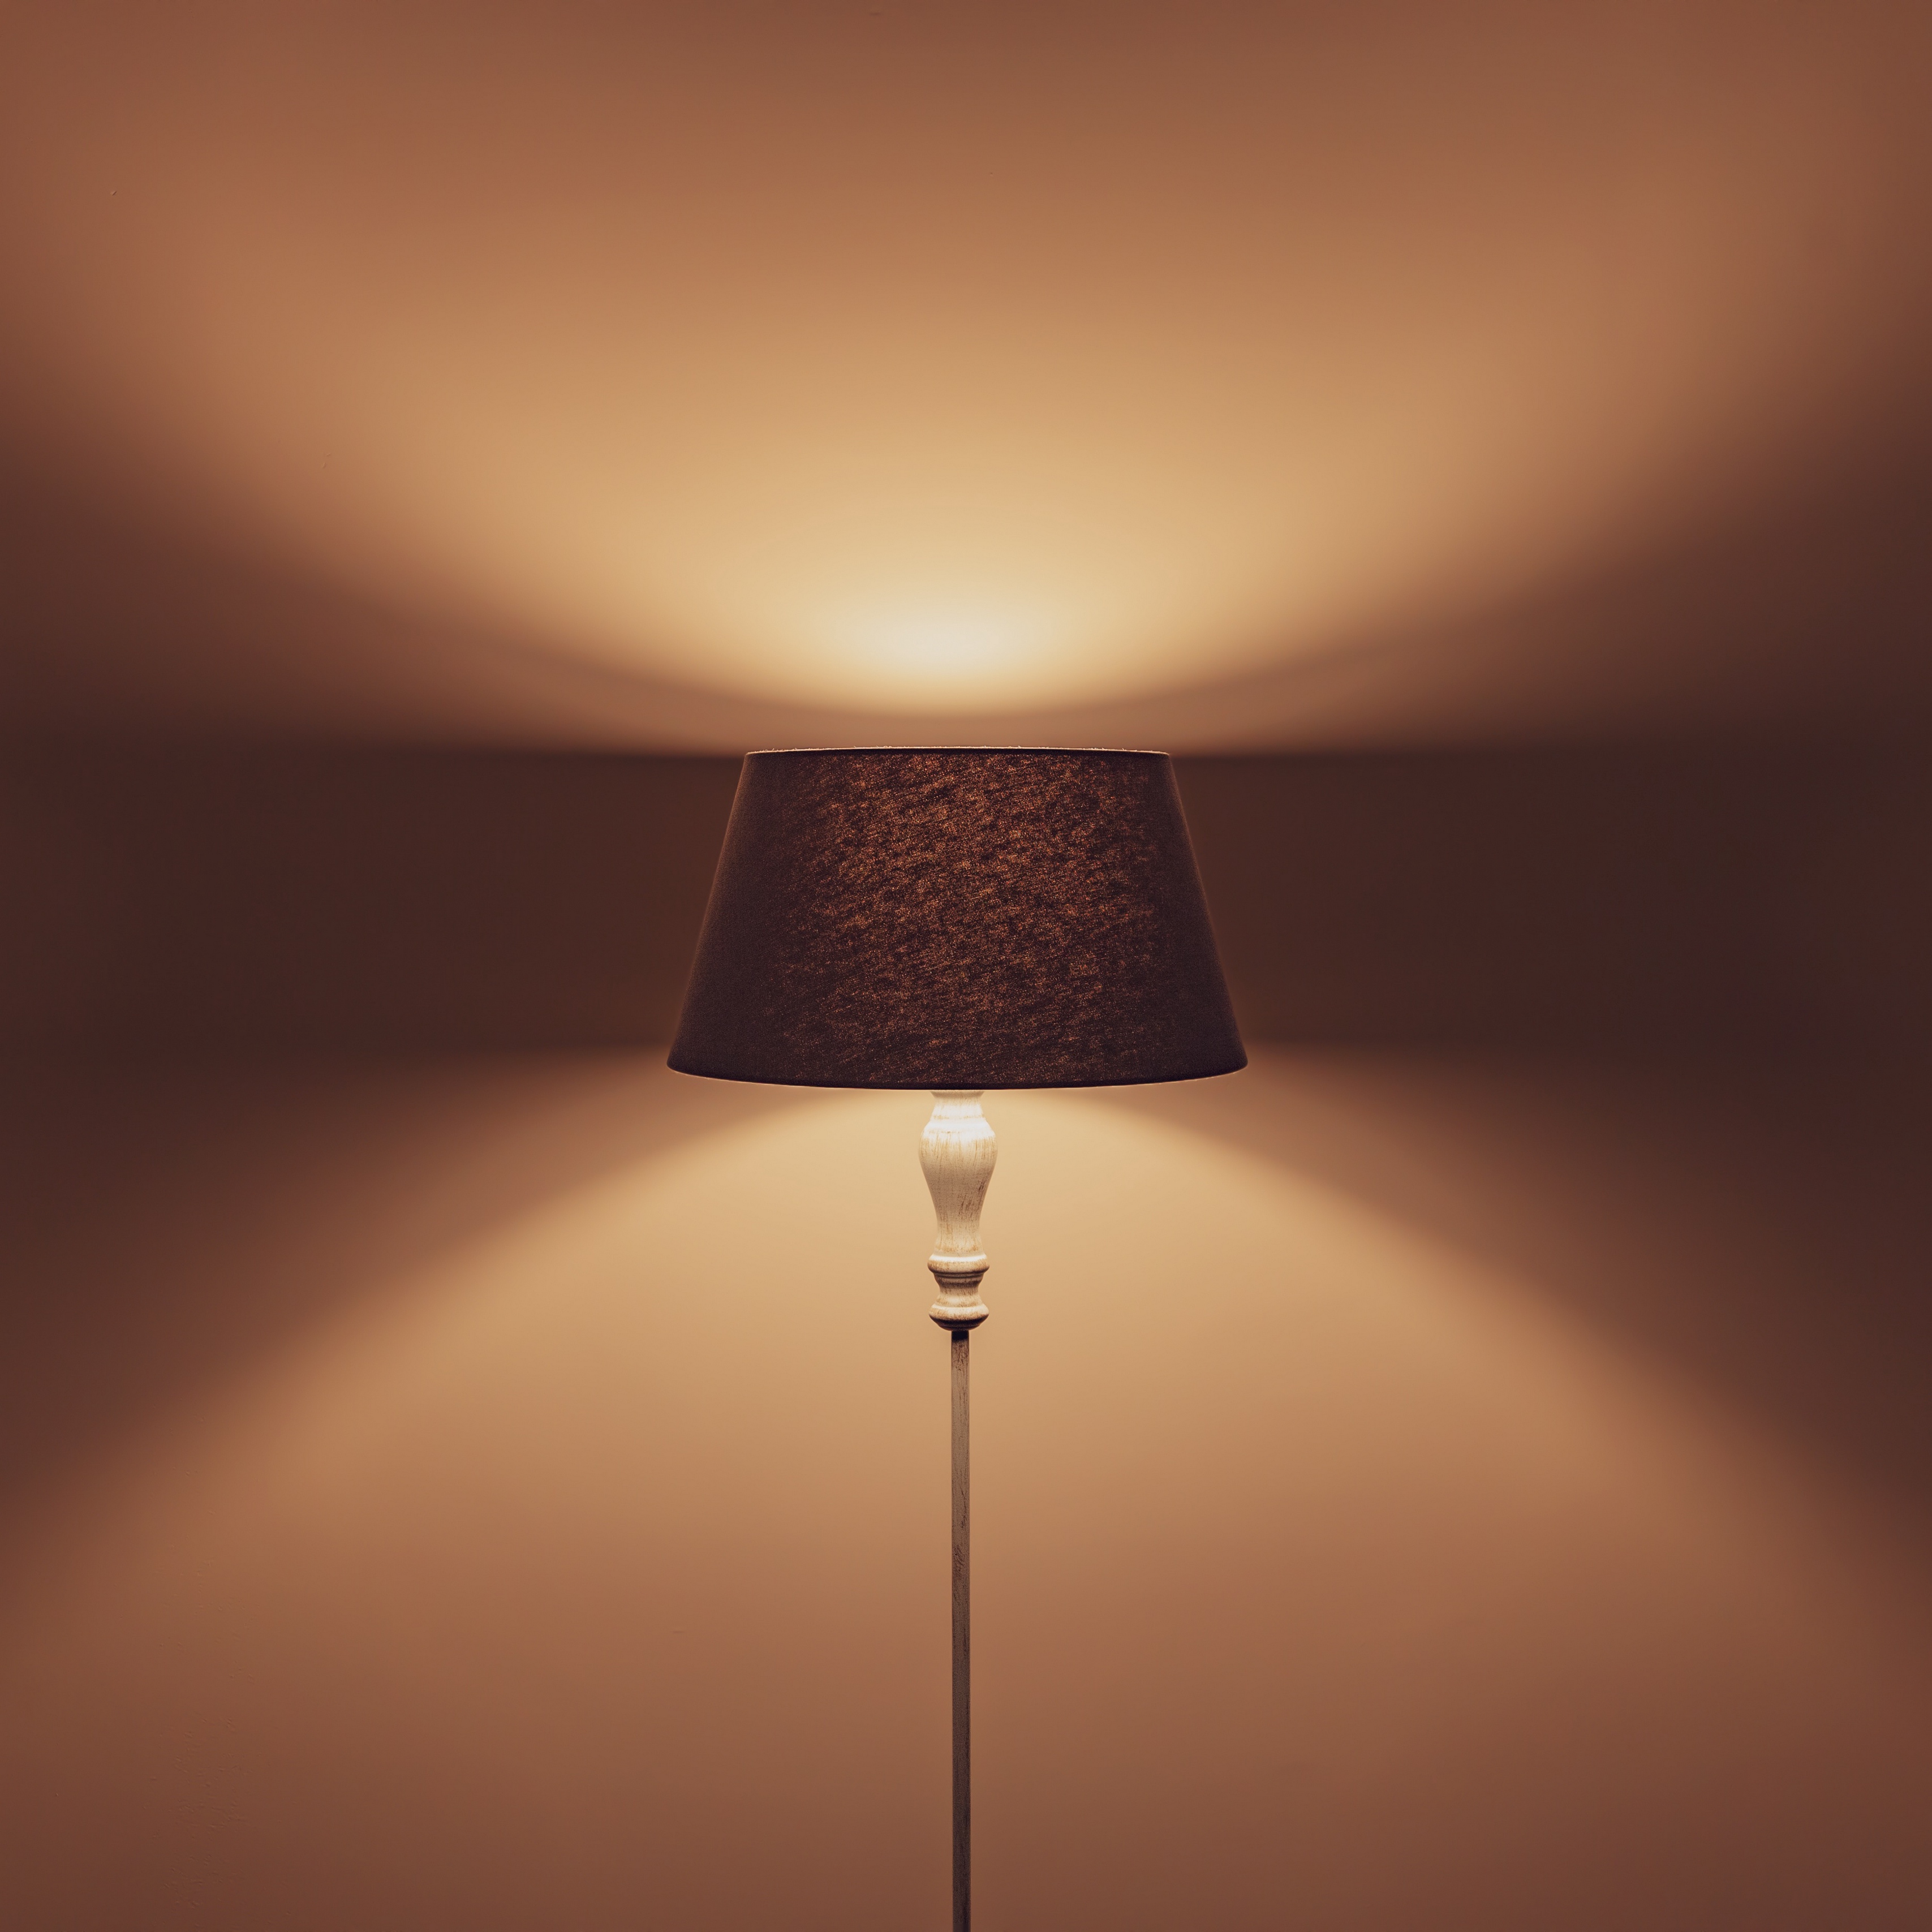 Download wallpaper 3415x3415 lamp, floor lamp, lampshade, lighting